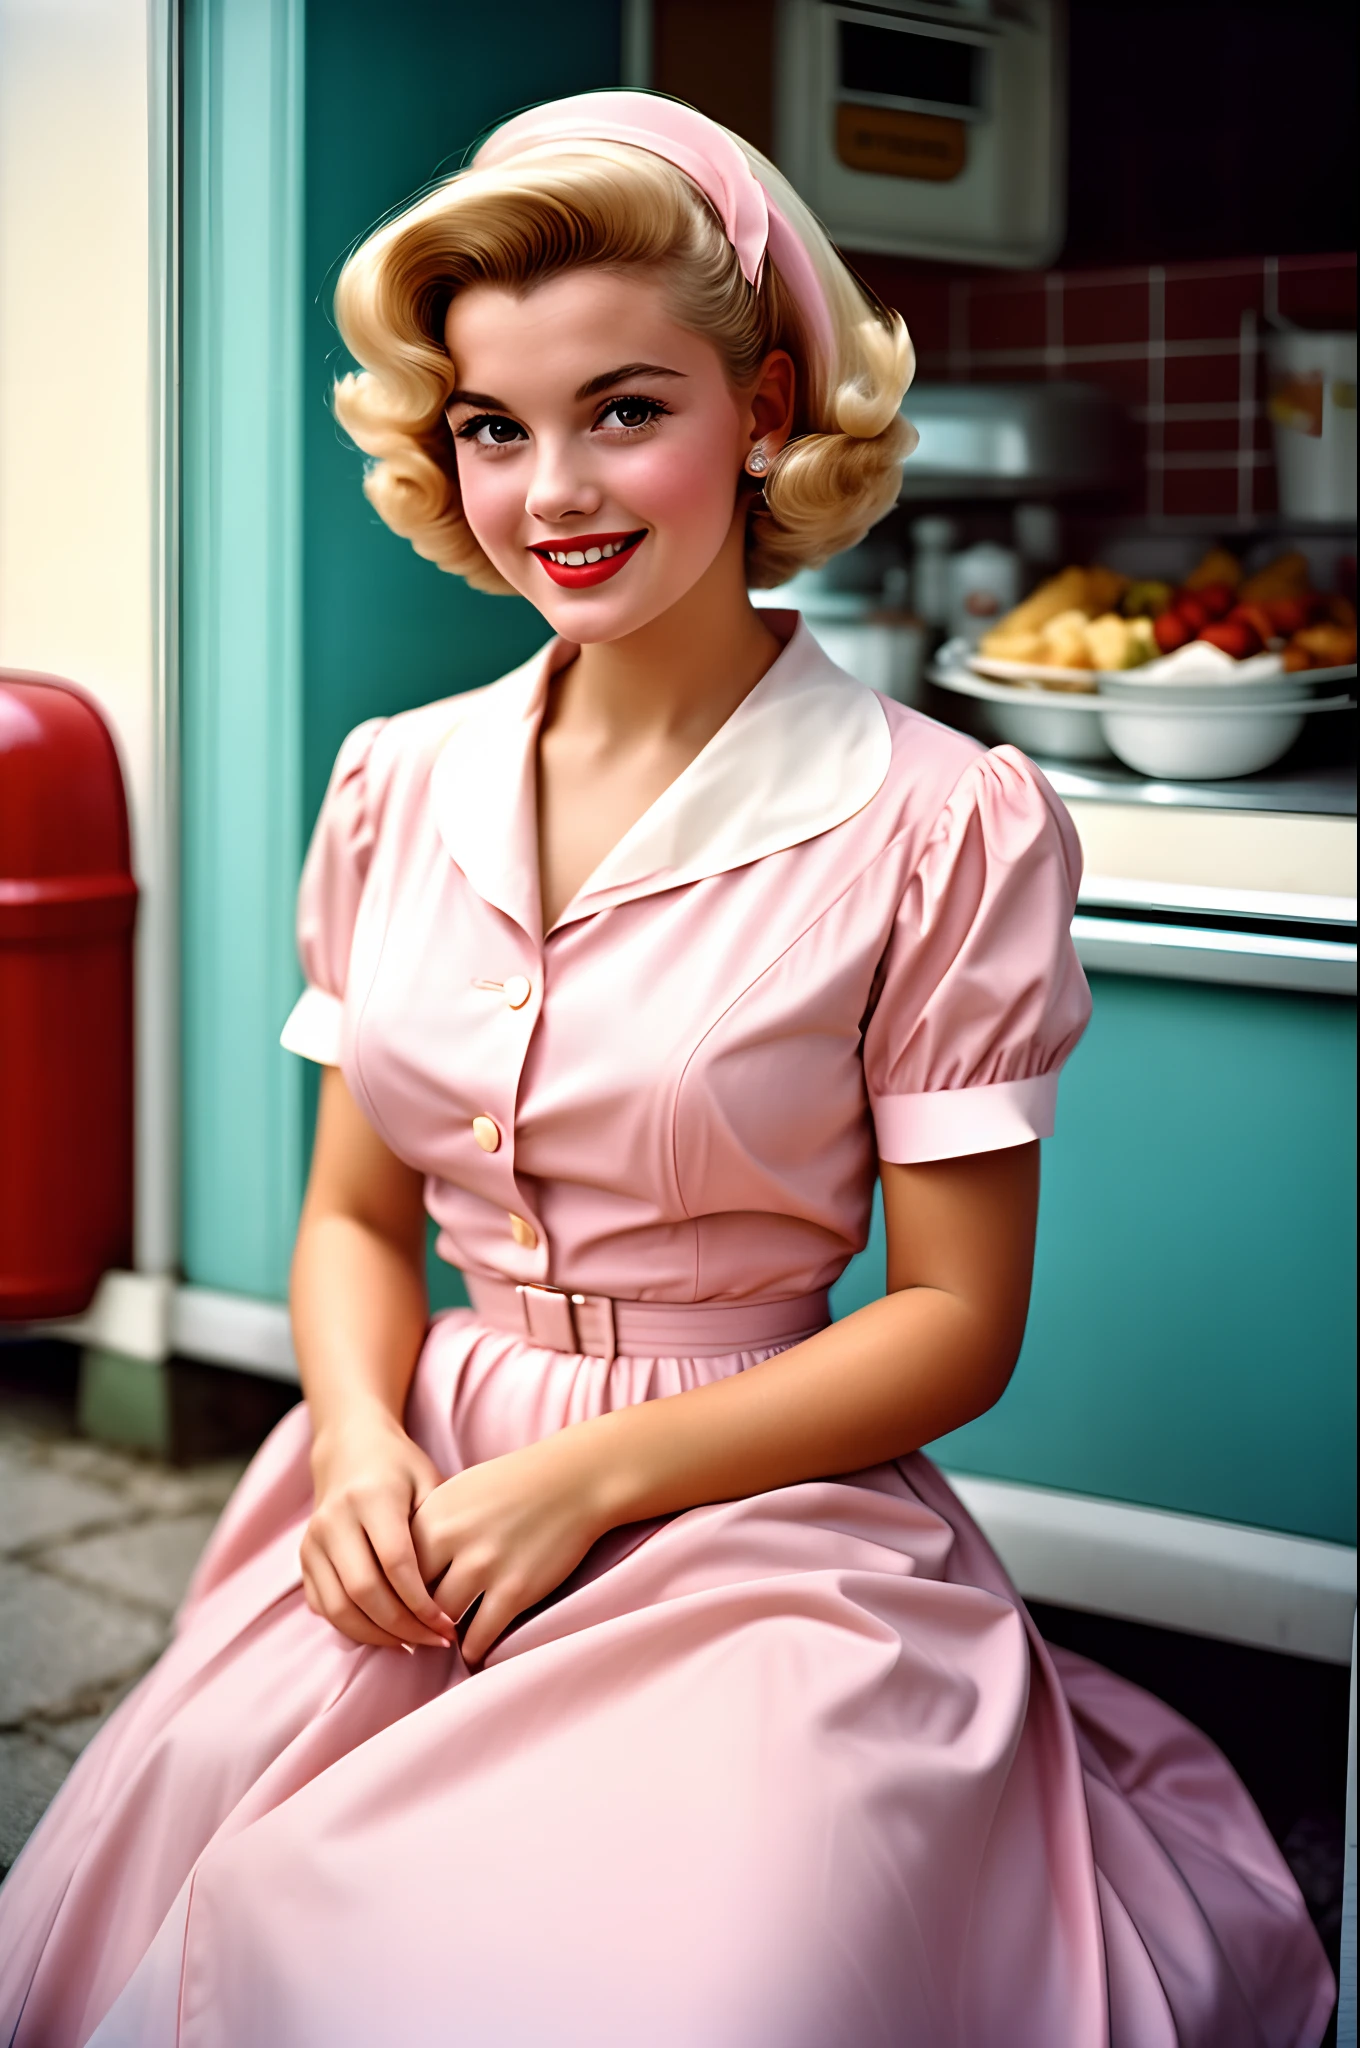 ลักษณะของแม่บ้านสาวแสนสวย, ยิ้ม, สวมชุดสีชมพูพาสเทล, ภาพนี้ถ่ายด้วยกล้องอะนาล็อกในปี 1950. ผู้คนสวมเสื้อผ้าสไตล์ดั้งเดิมของยุค 50, คนที่มีทรงผมแบบดั้งเดิมในยุค 50, ภาพถ่ายโดยวิลเลียม เอ็กเกิลสตัน, ดูยุค 50, มีรายละเอียดสูง, สีพาสเทลจางลงเล็กน้อย, เบลอเล็กน้อย, มีเม็ดเล็กเล็กน้อย, การถ่ายภาพภาพยนตร์